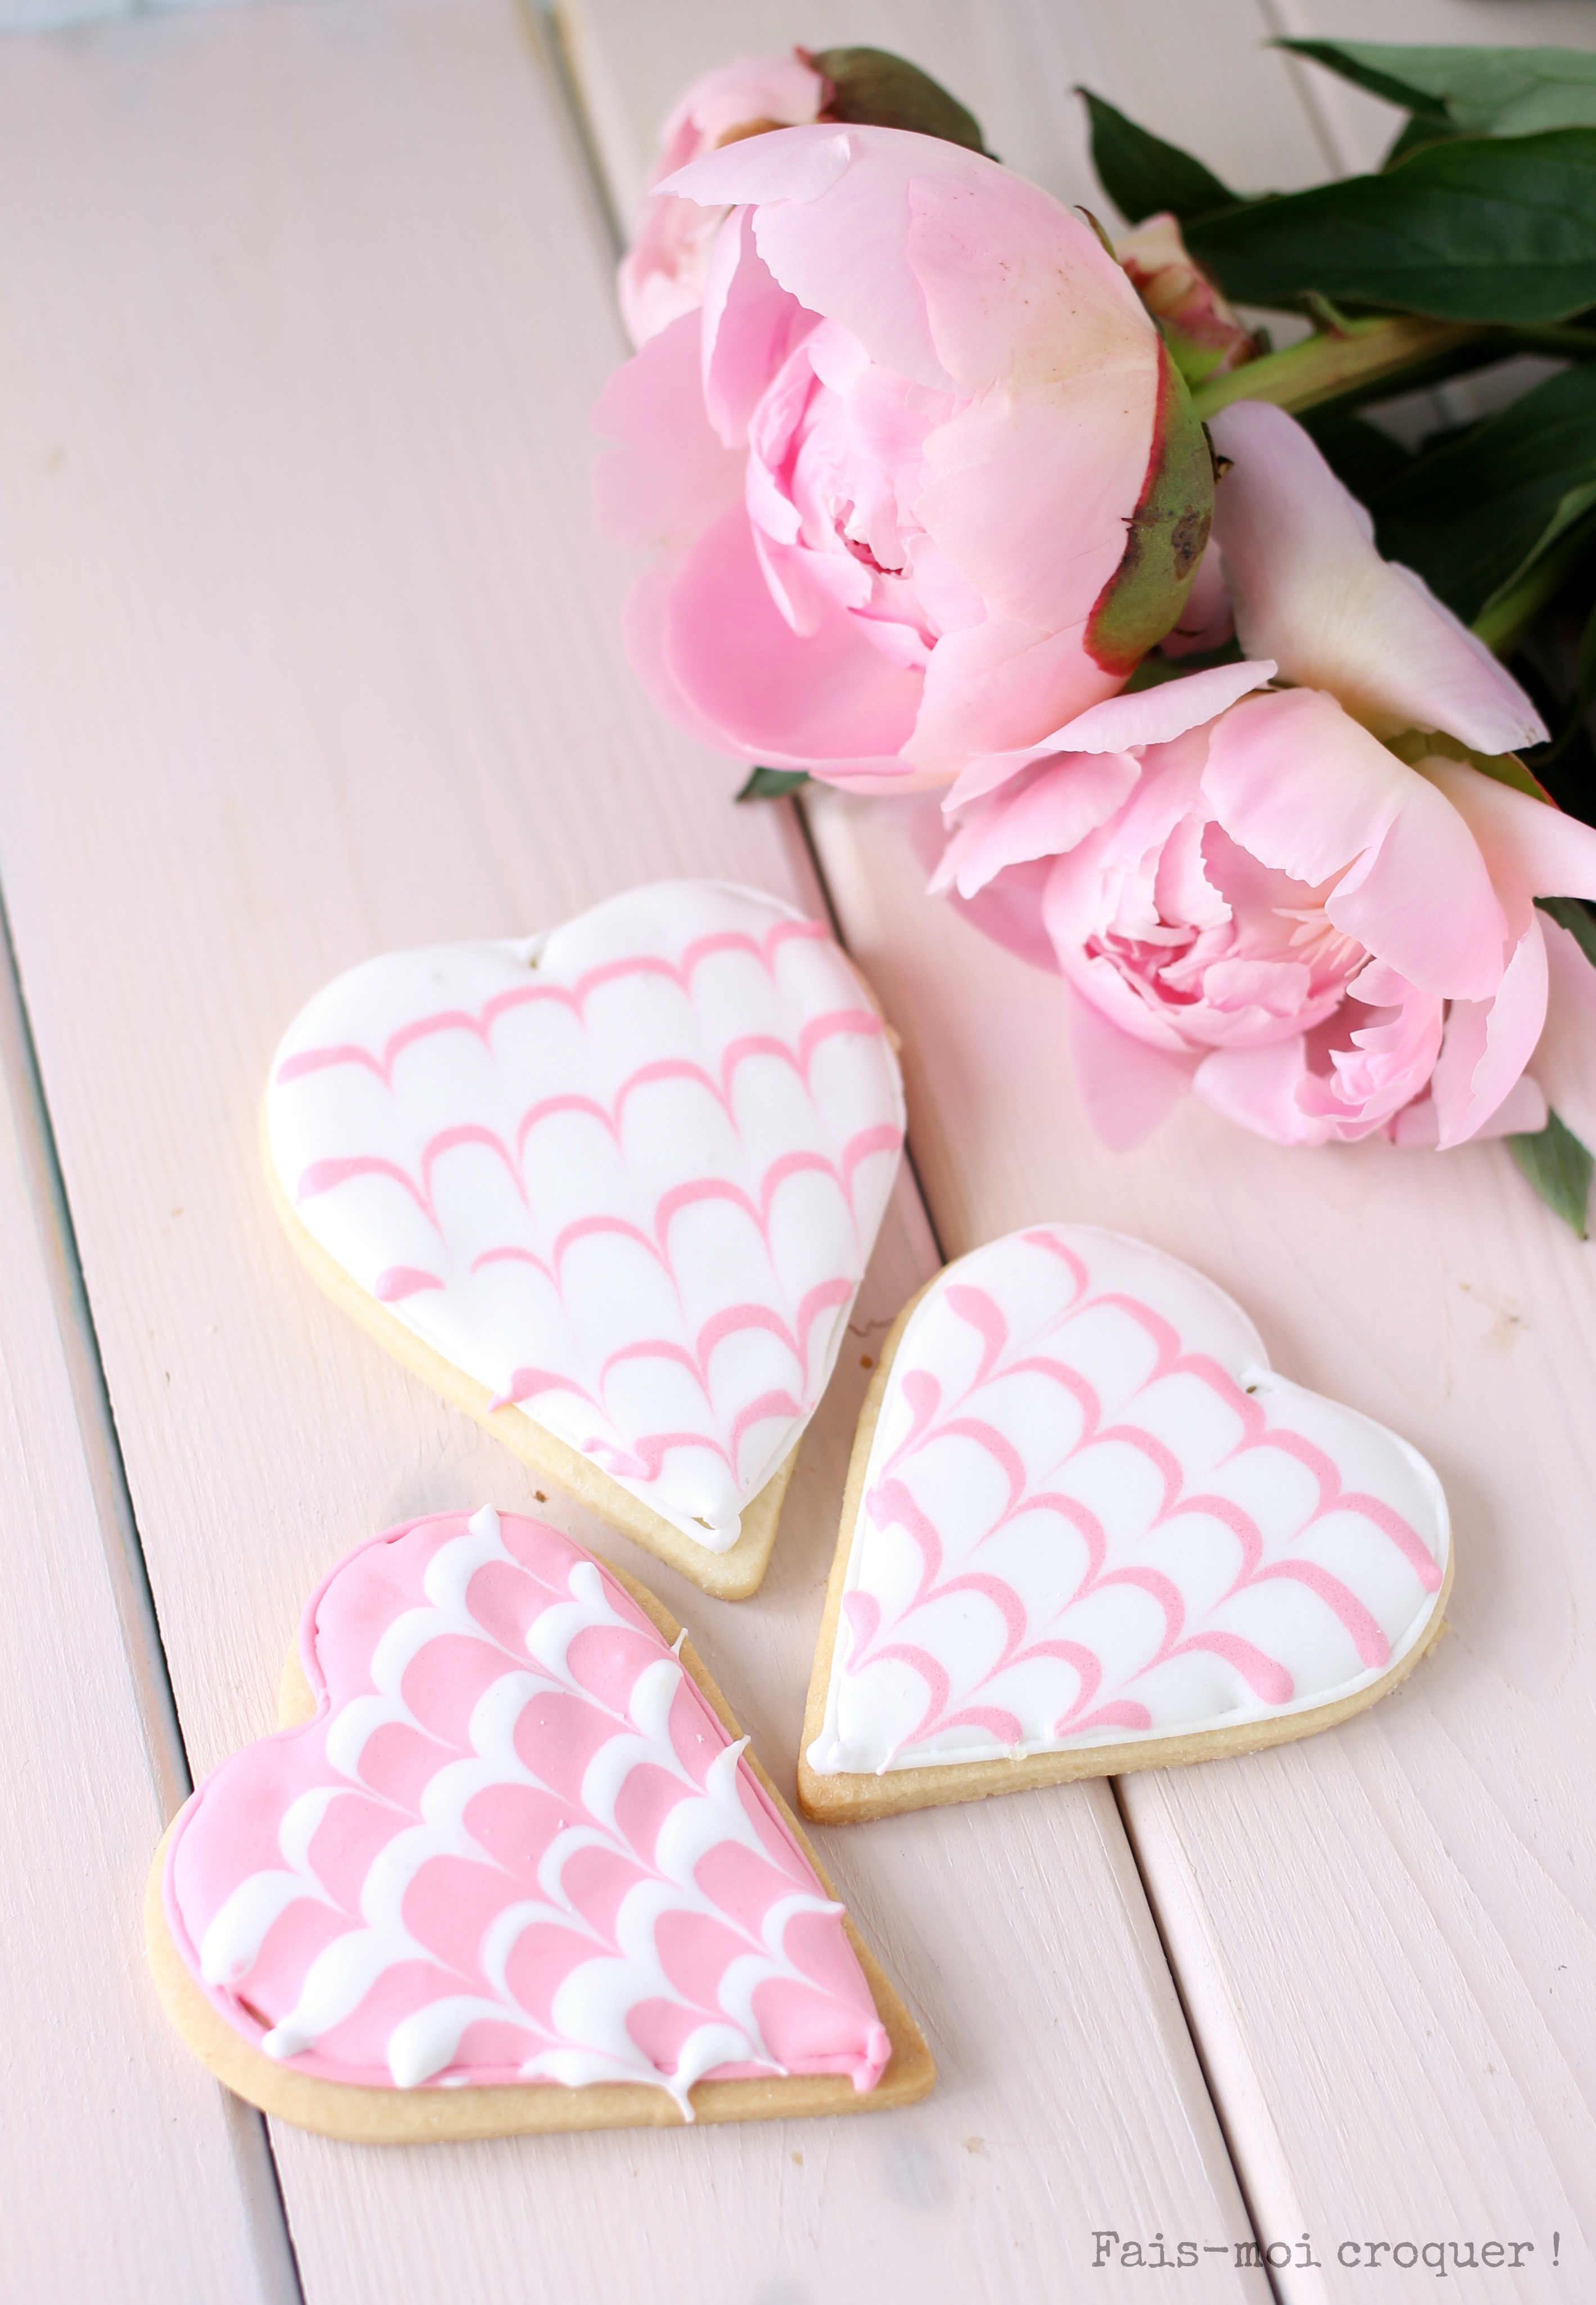 biscuits décorés de glace royale pour la fête des mères